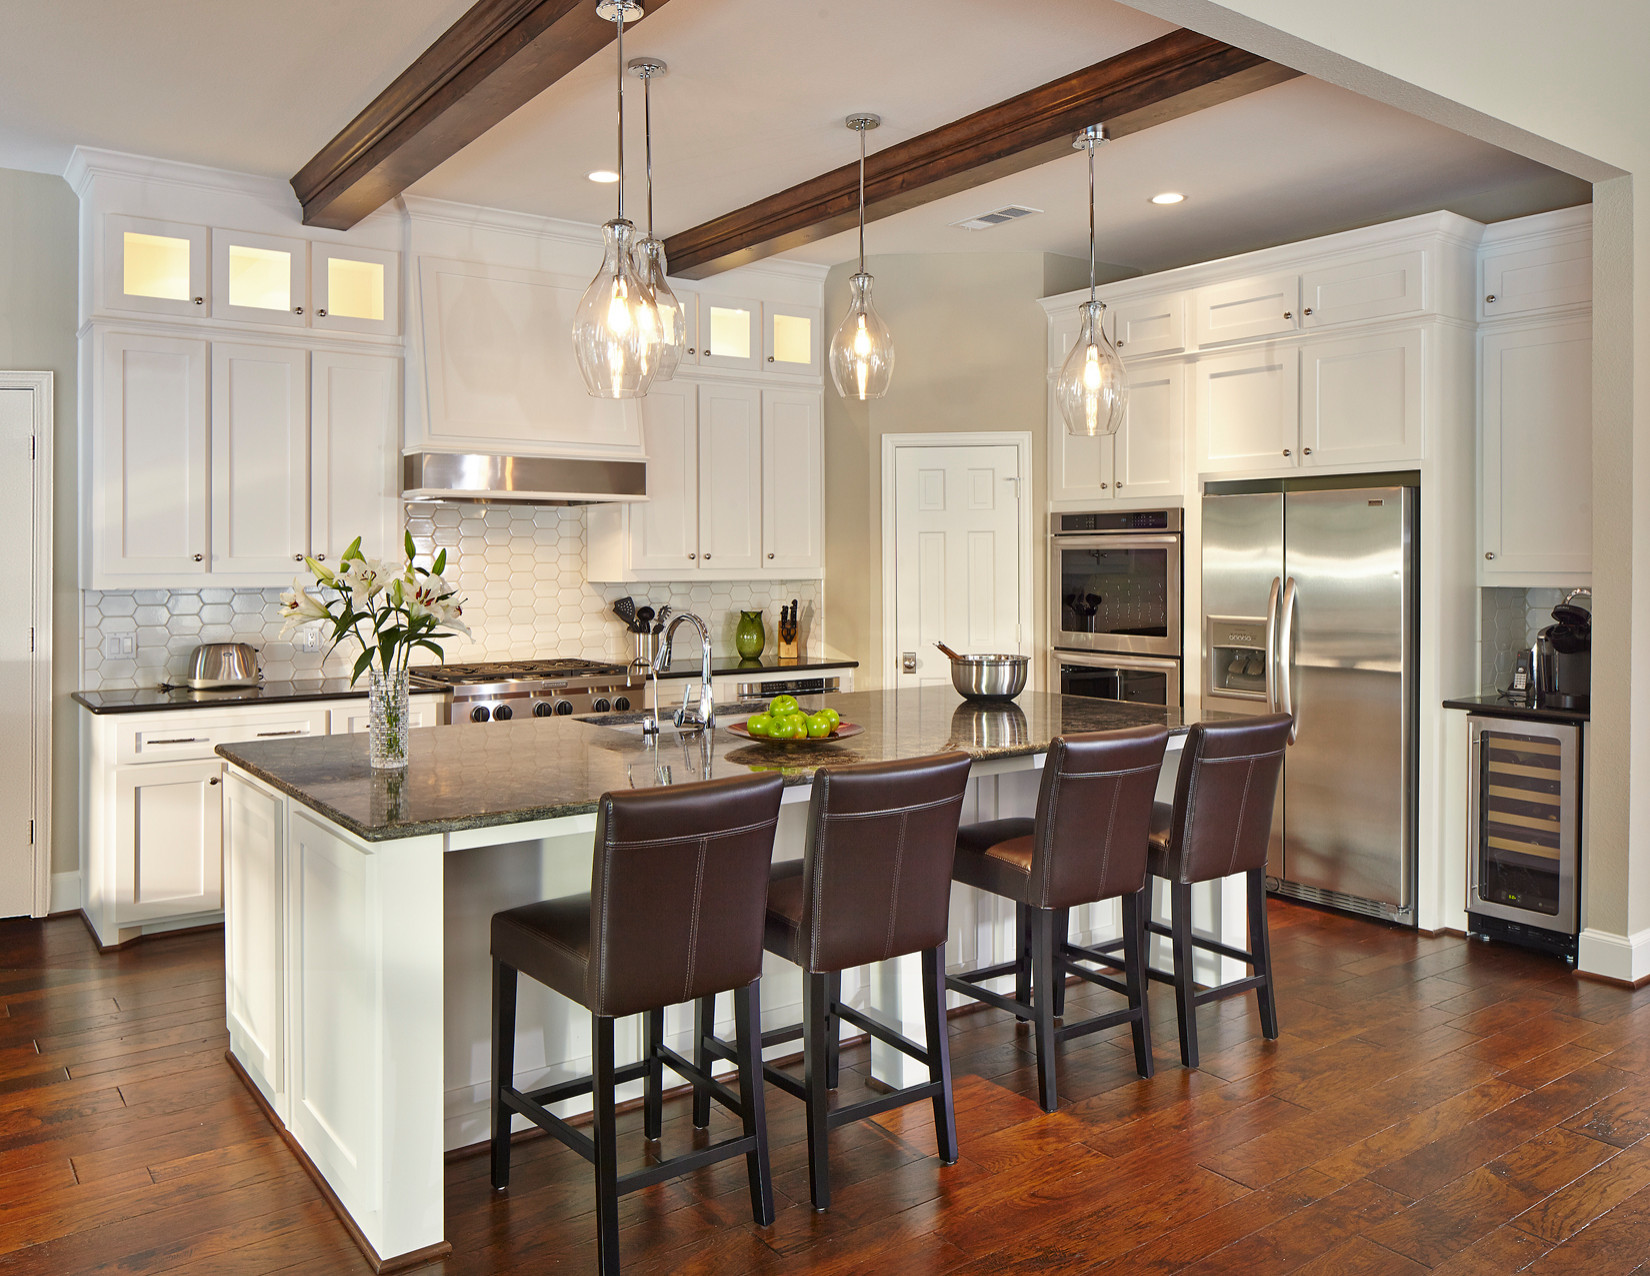 2014 Arc Awards Best Kitchen Remodel 75 000 100 000 Kitchen Dallas By Dallas Builders Association Houzz